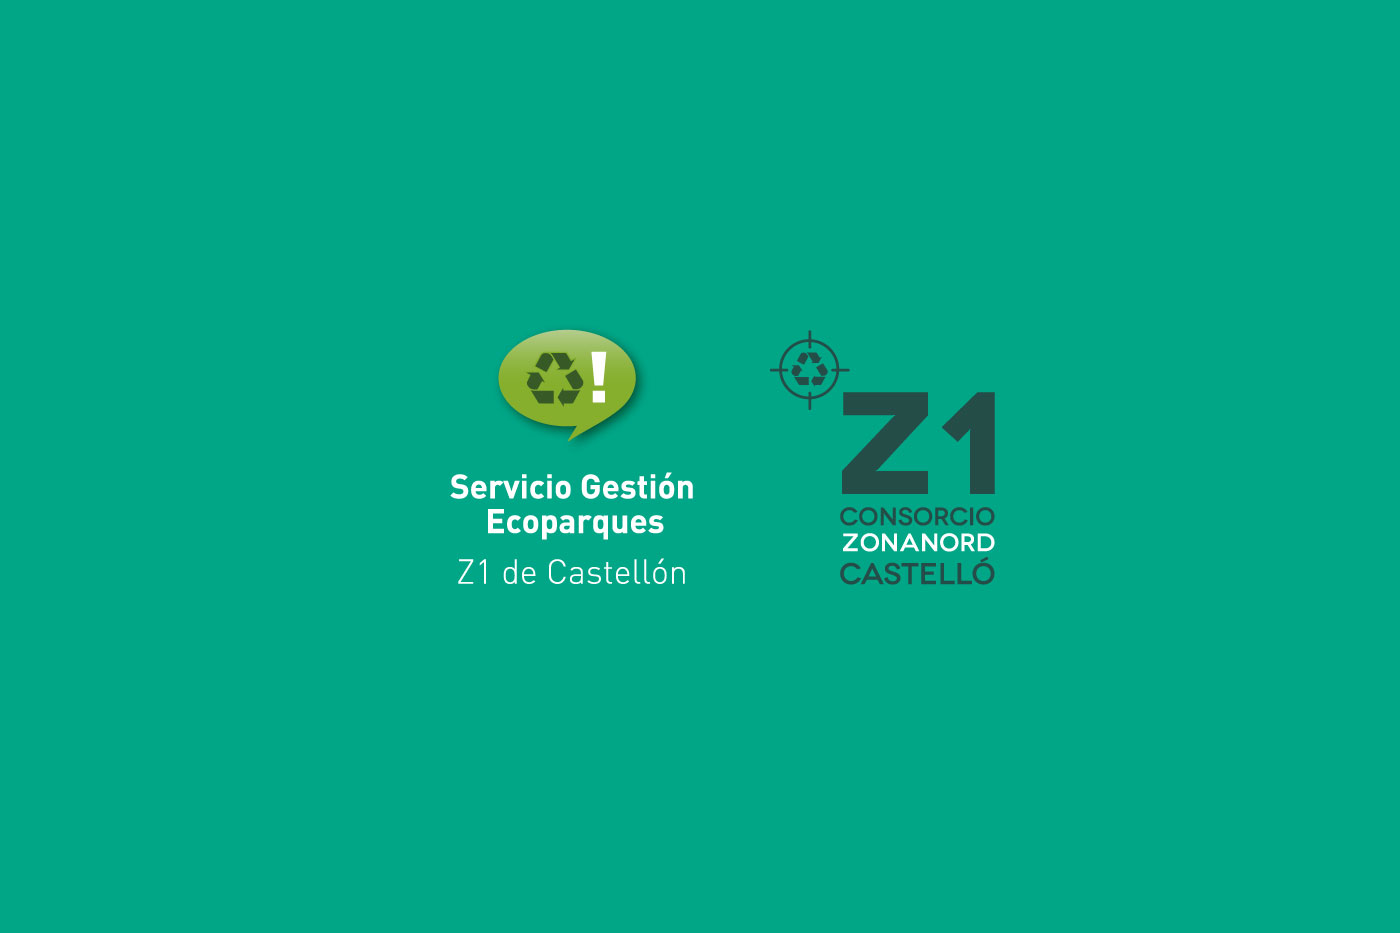 Servicio gestion ecoparques Z1 identidad corporativa